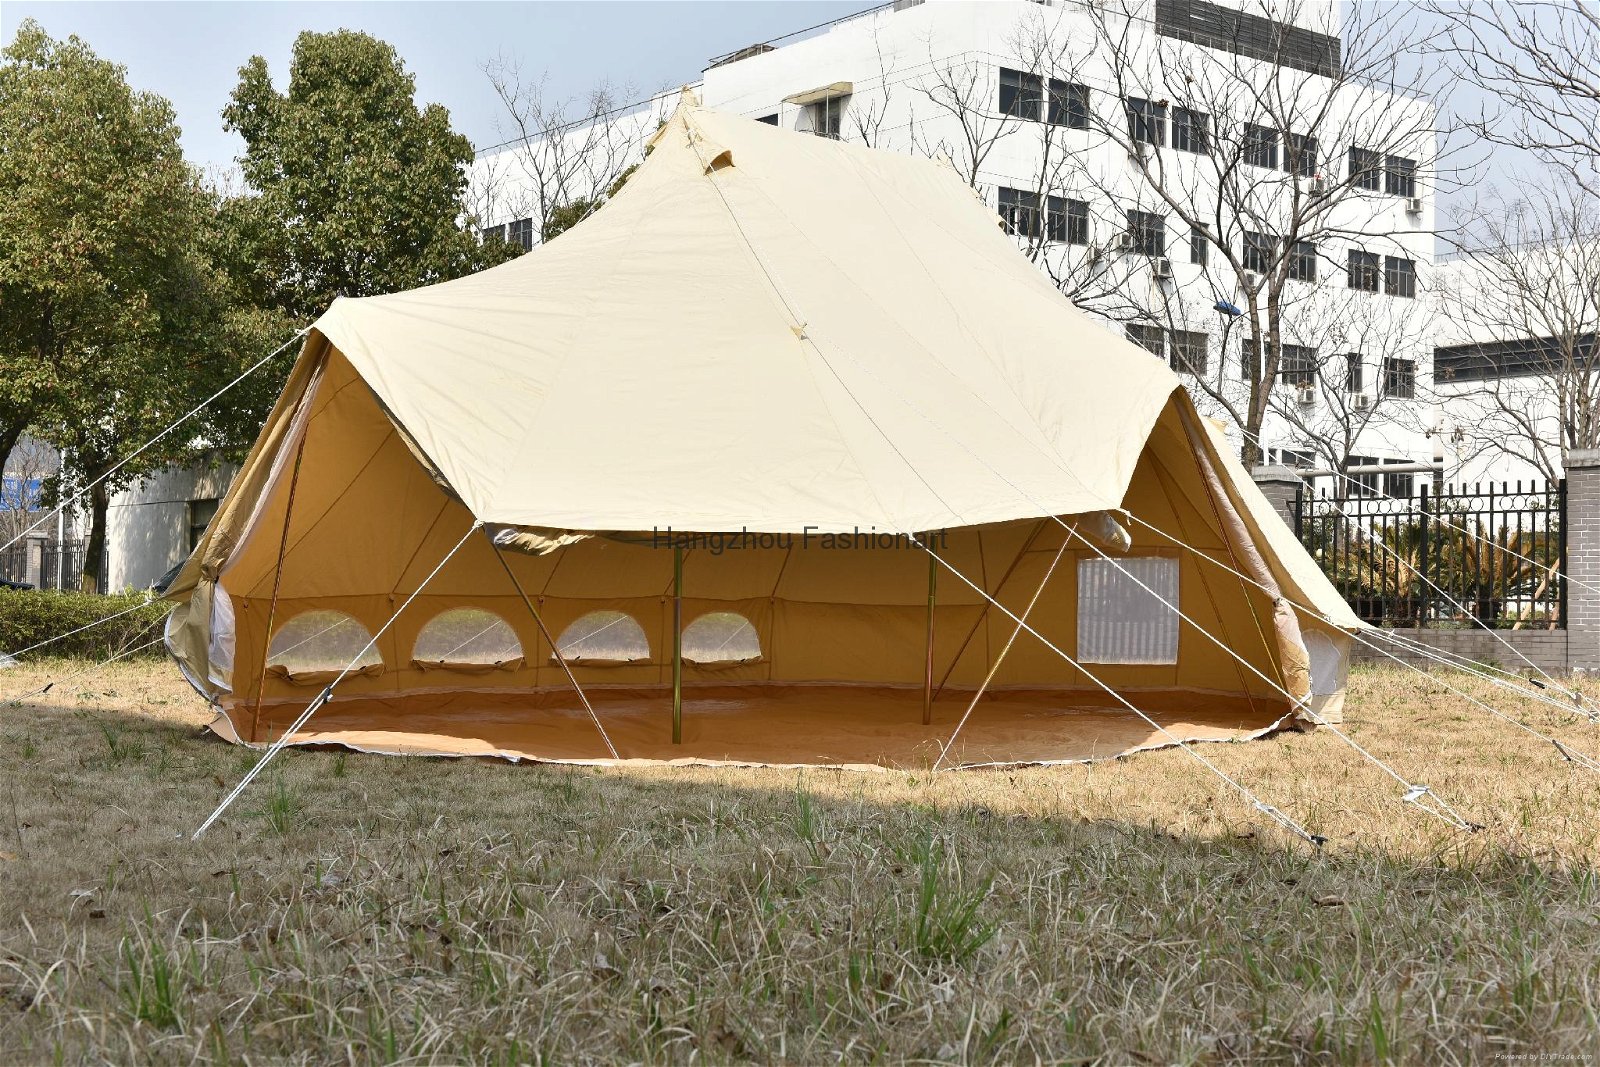 Hangzhou Fashion Art Emperor twin bell tent 4